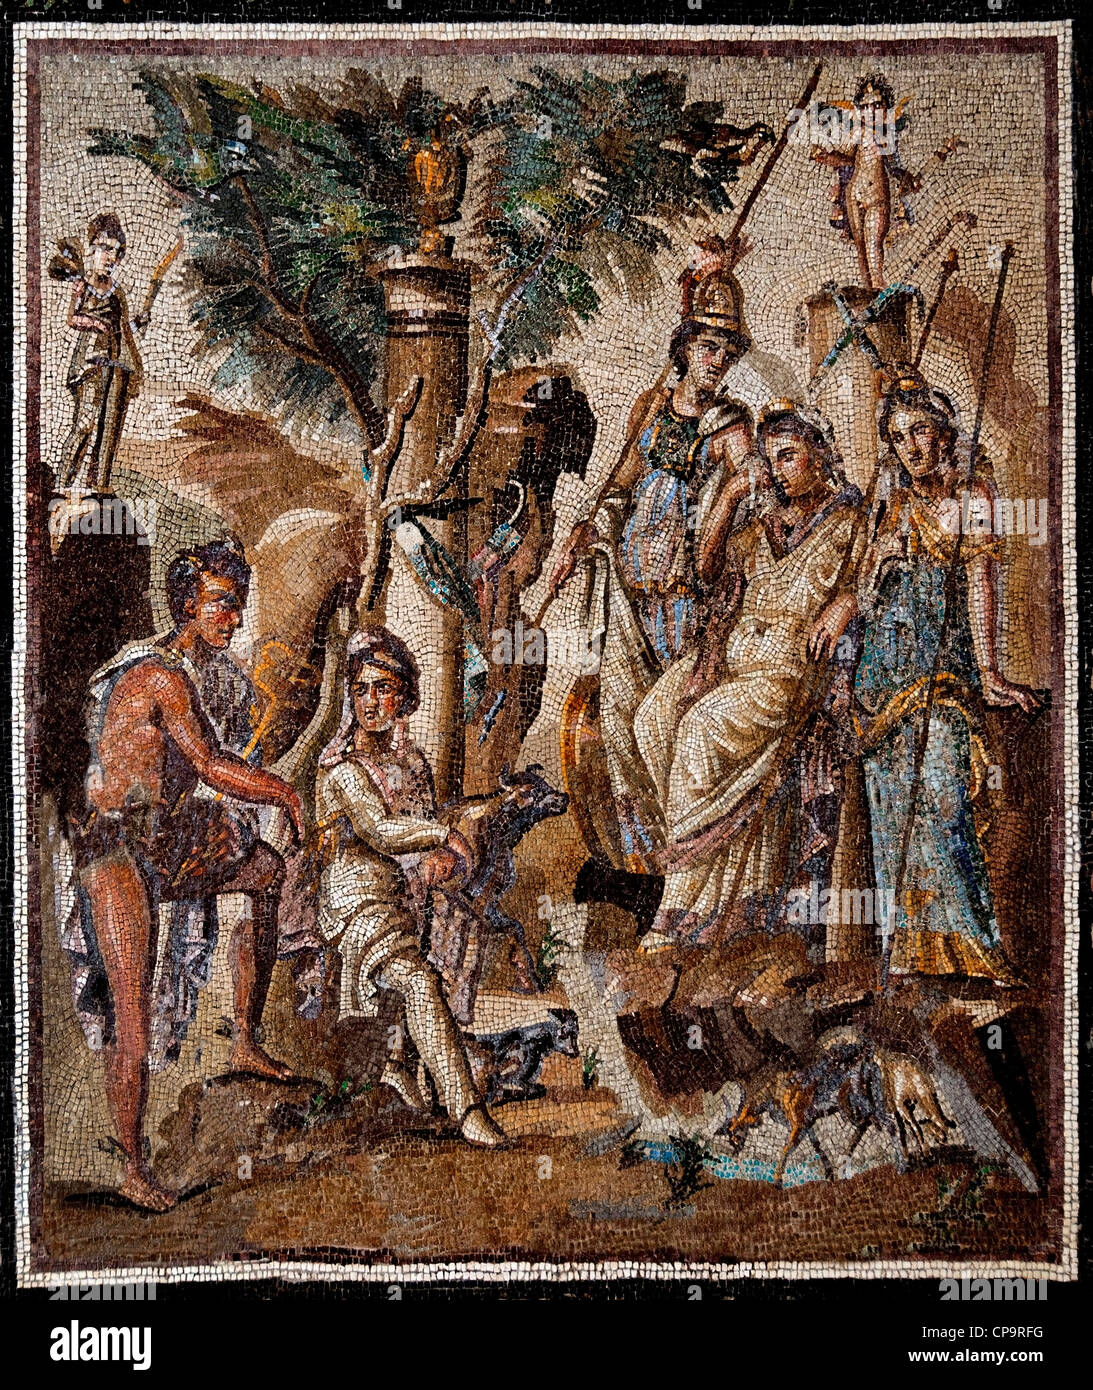 Boden Mosaik das Urteil des Paris 115-150 n. Chr. Antiochia am Orontes, jetzt Antakya Türkei Marmor Kalkstein Glas einfügen Roman Stockfoto